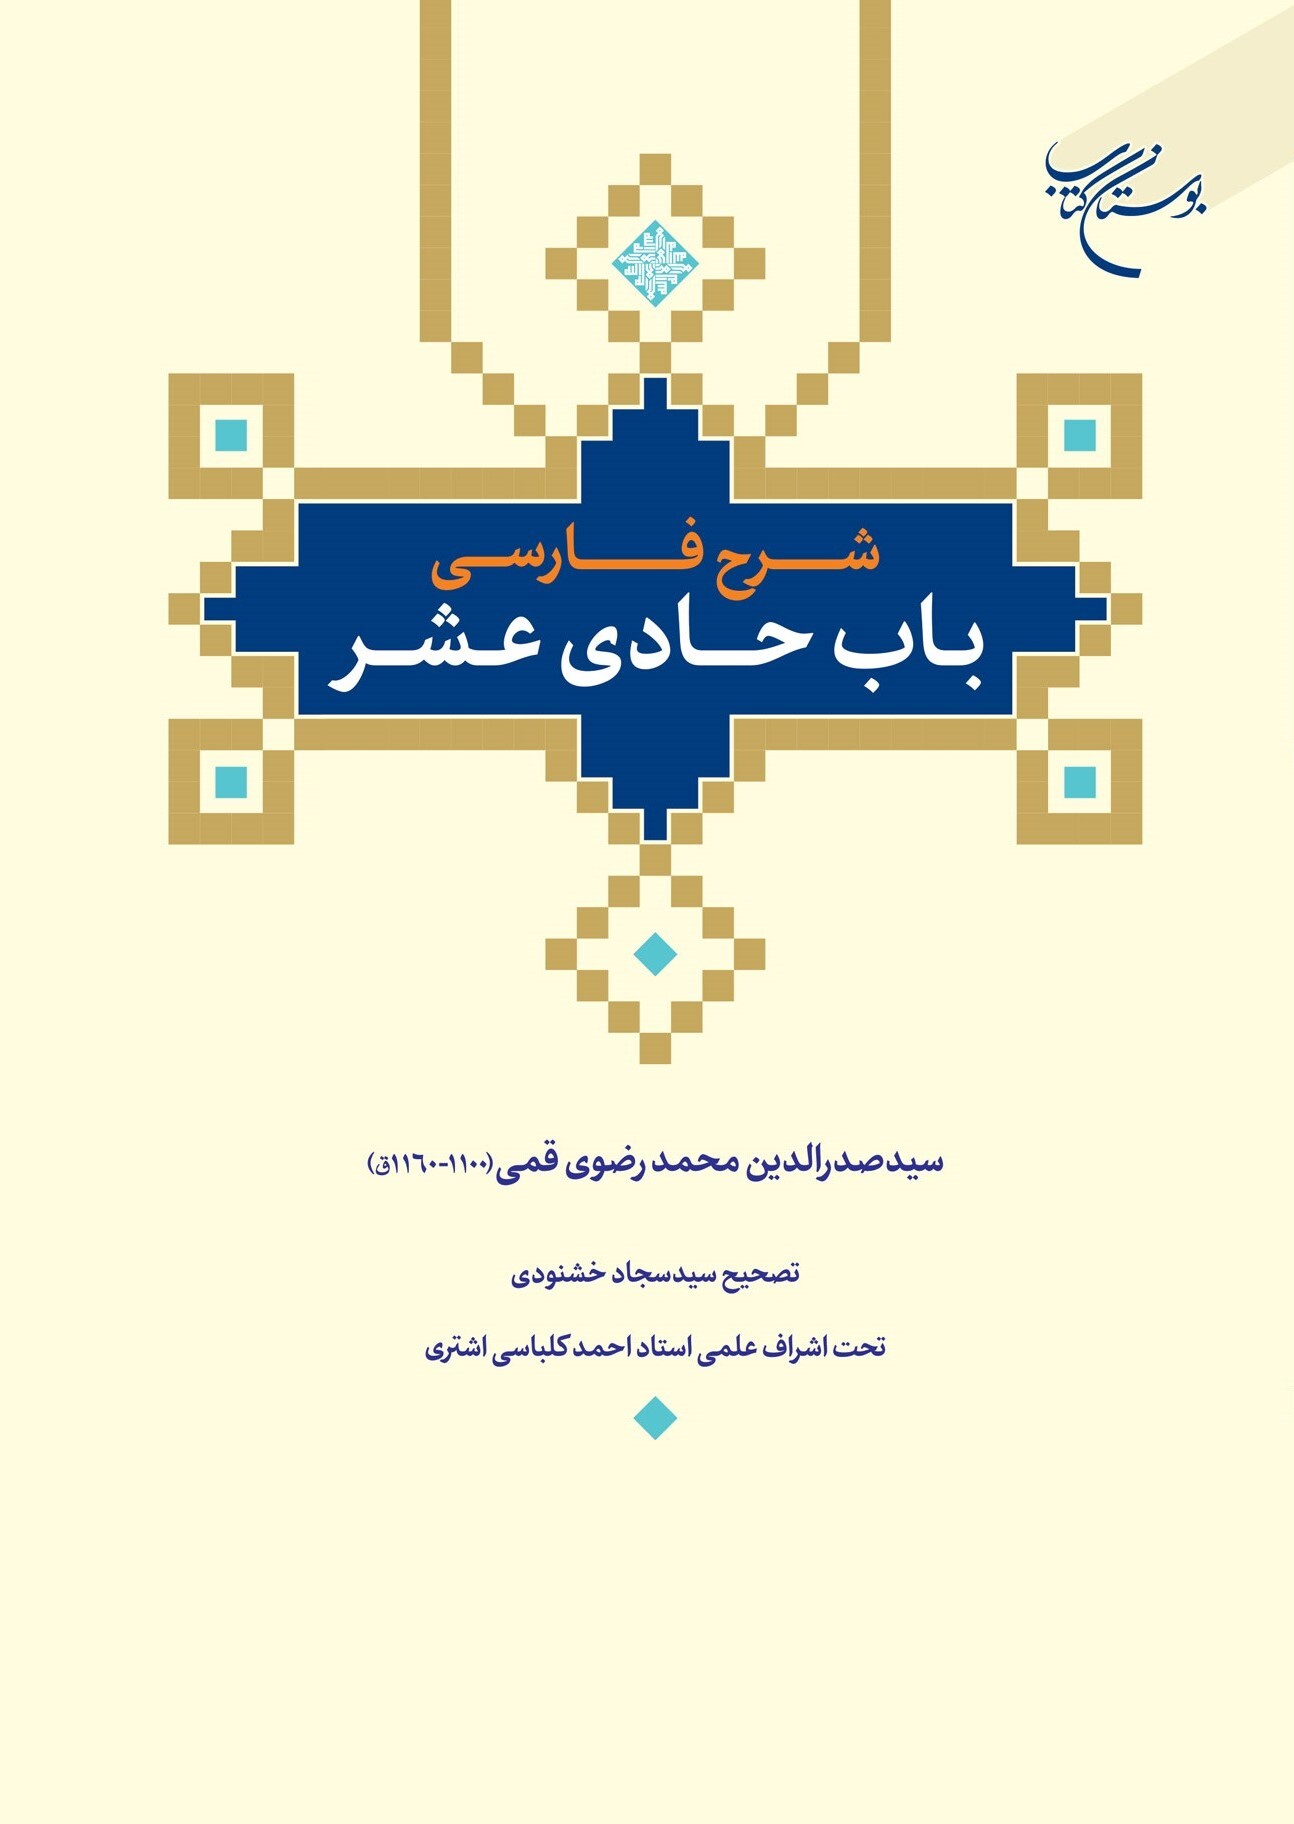 کتاب «شرح فارسی باب حادی عشر» روانه بازار نشر شد + لینک/ م